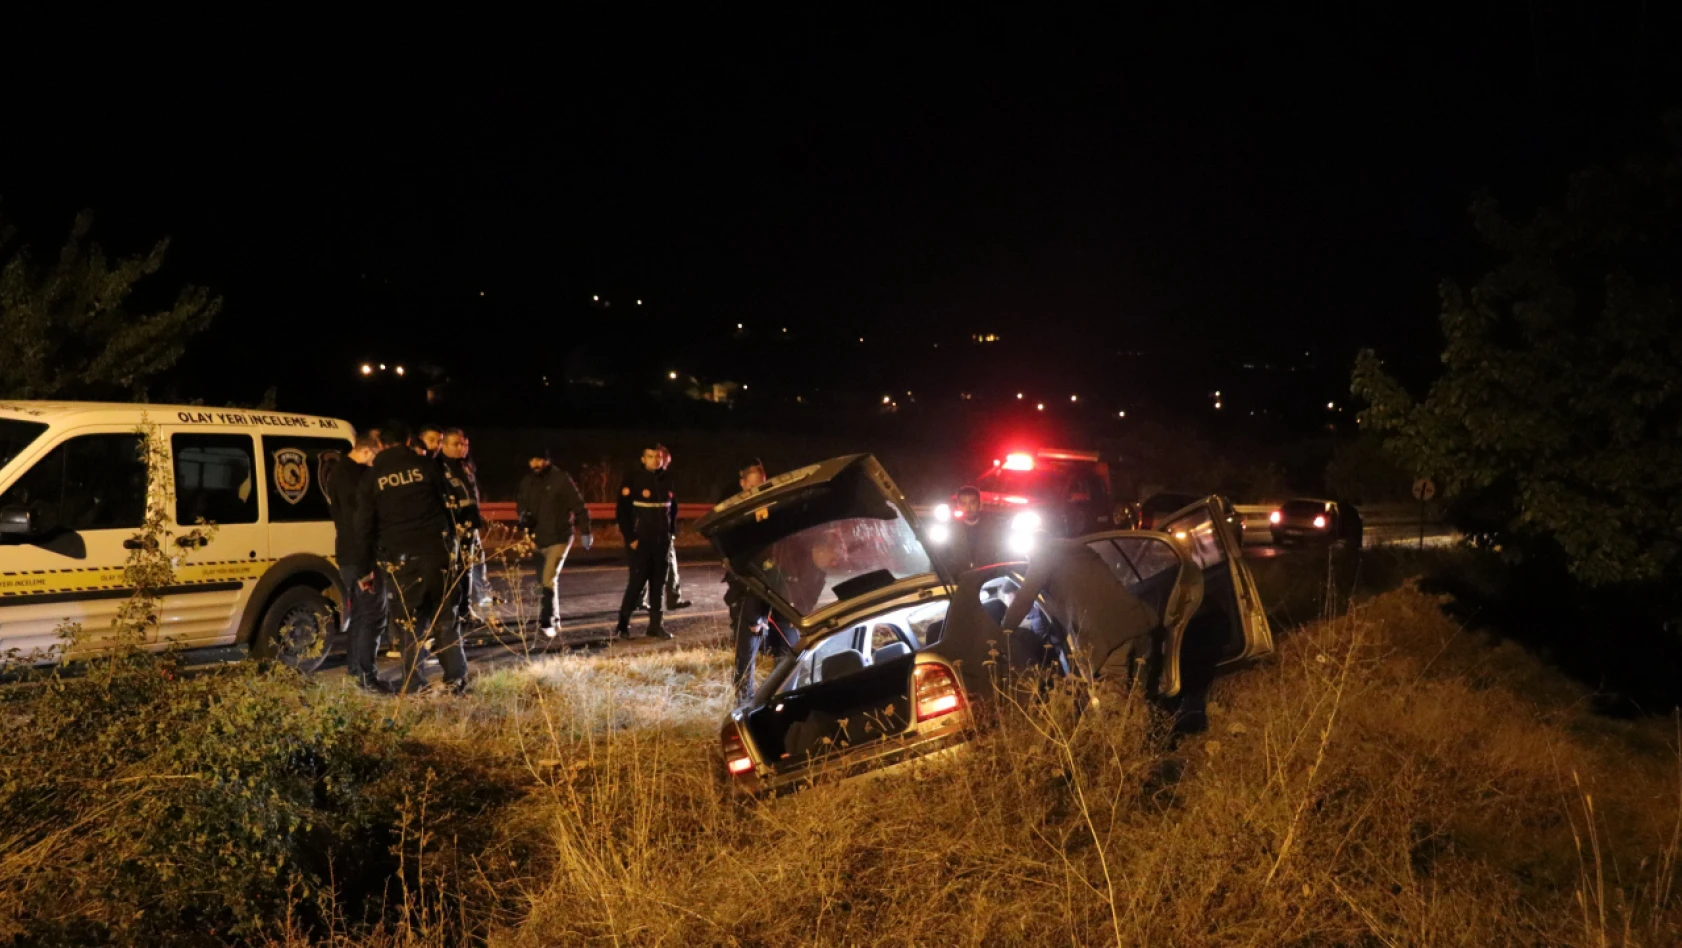 Kayseri'de Gizemli Olay - Trafik Kazası mı, Cinayet mi?